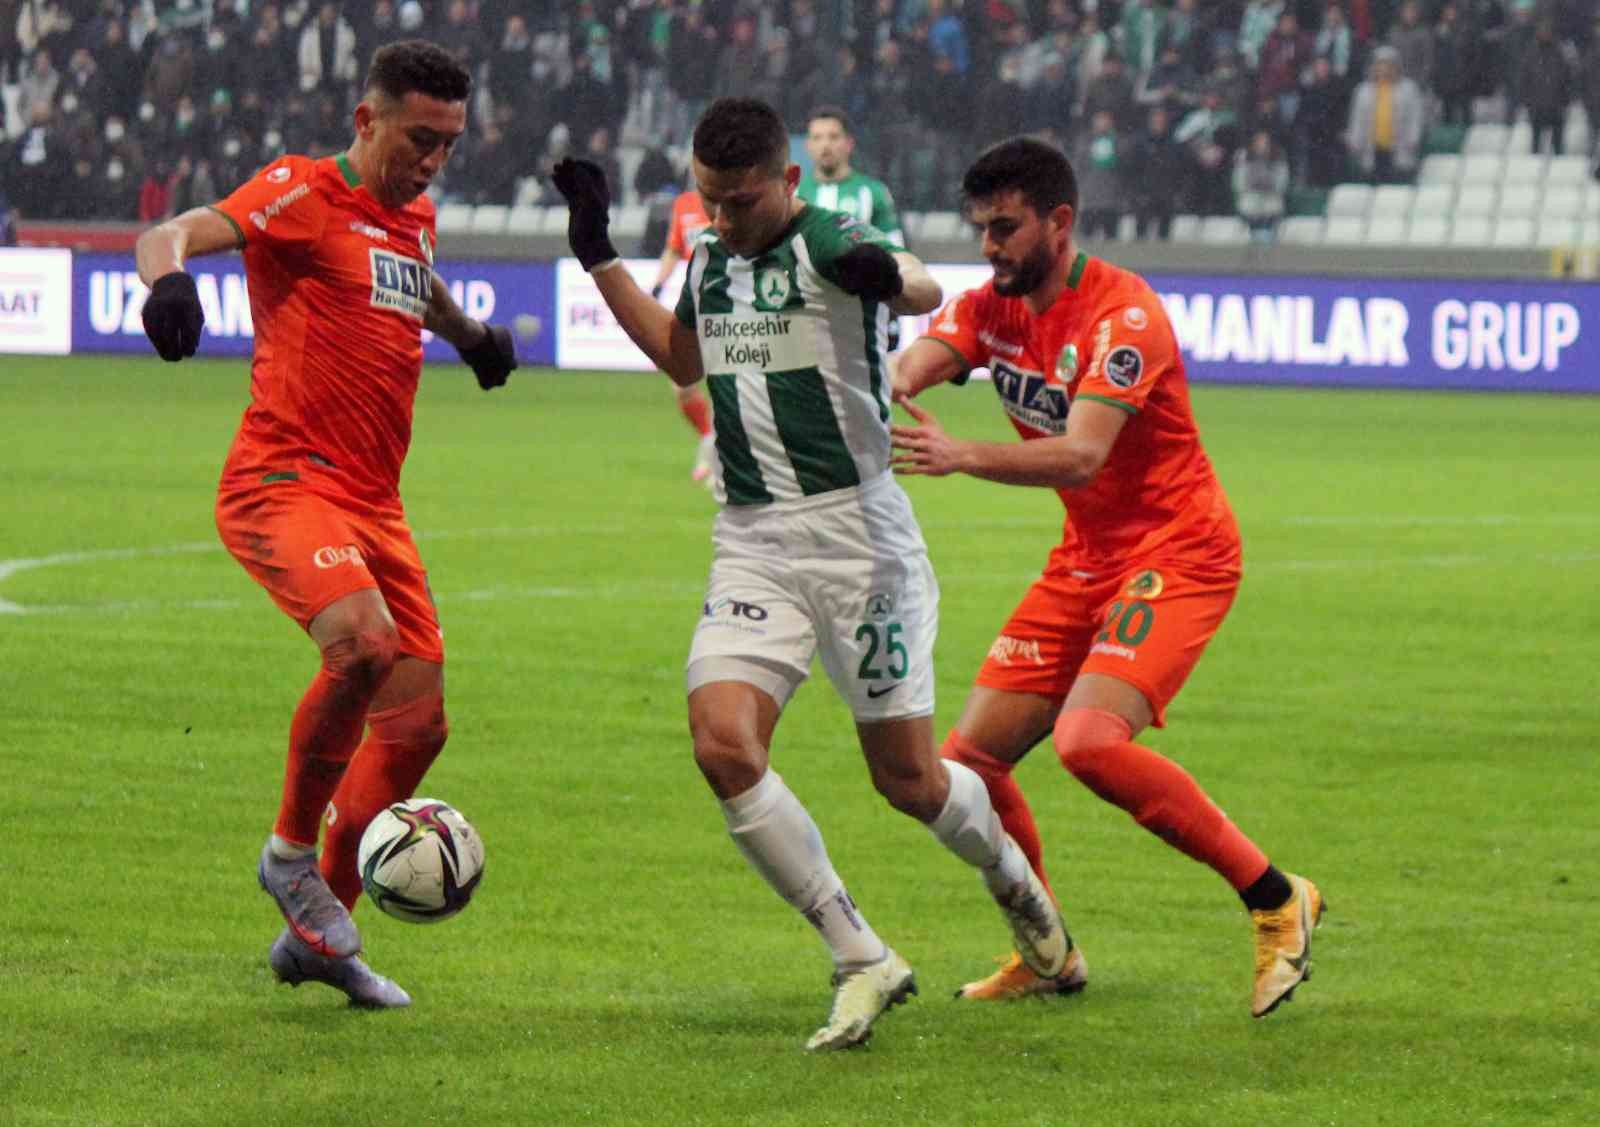 Spor Toto Süper Lig: GZT Giresunspor: 1 - Aytemiz Alanyaspor: 3 (Maç sonucu) #giresun